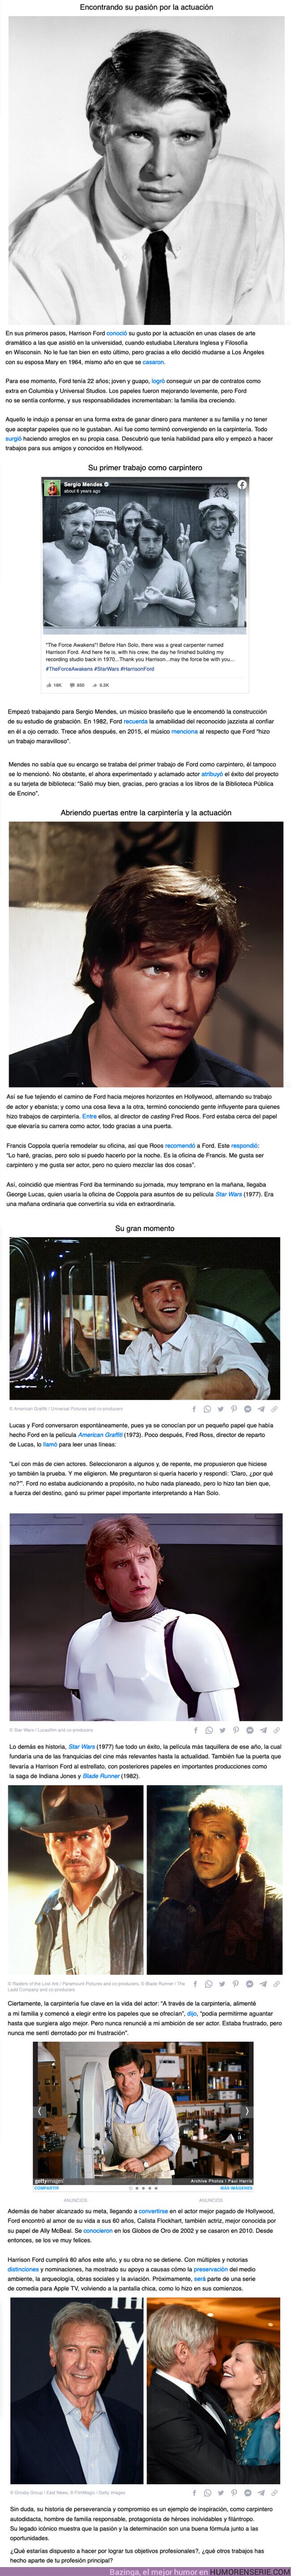 97806 - GALERÍA: “Estaba frustrado, pero nunca me sentí derrotado”, Harrison Ford y su paso de carpintero a famoso actor